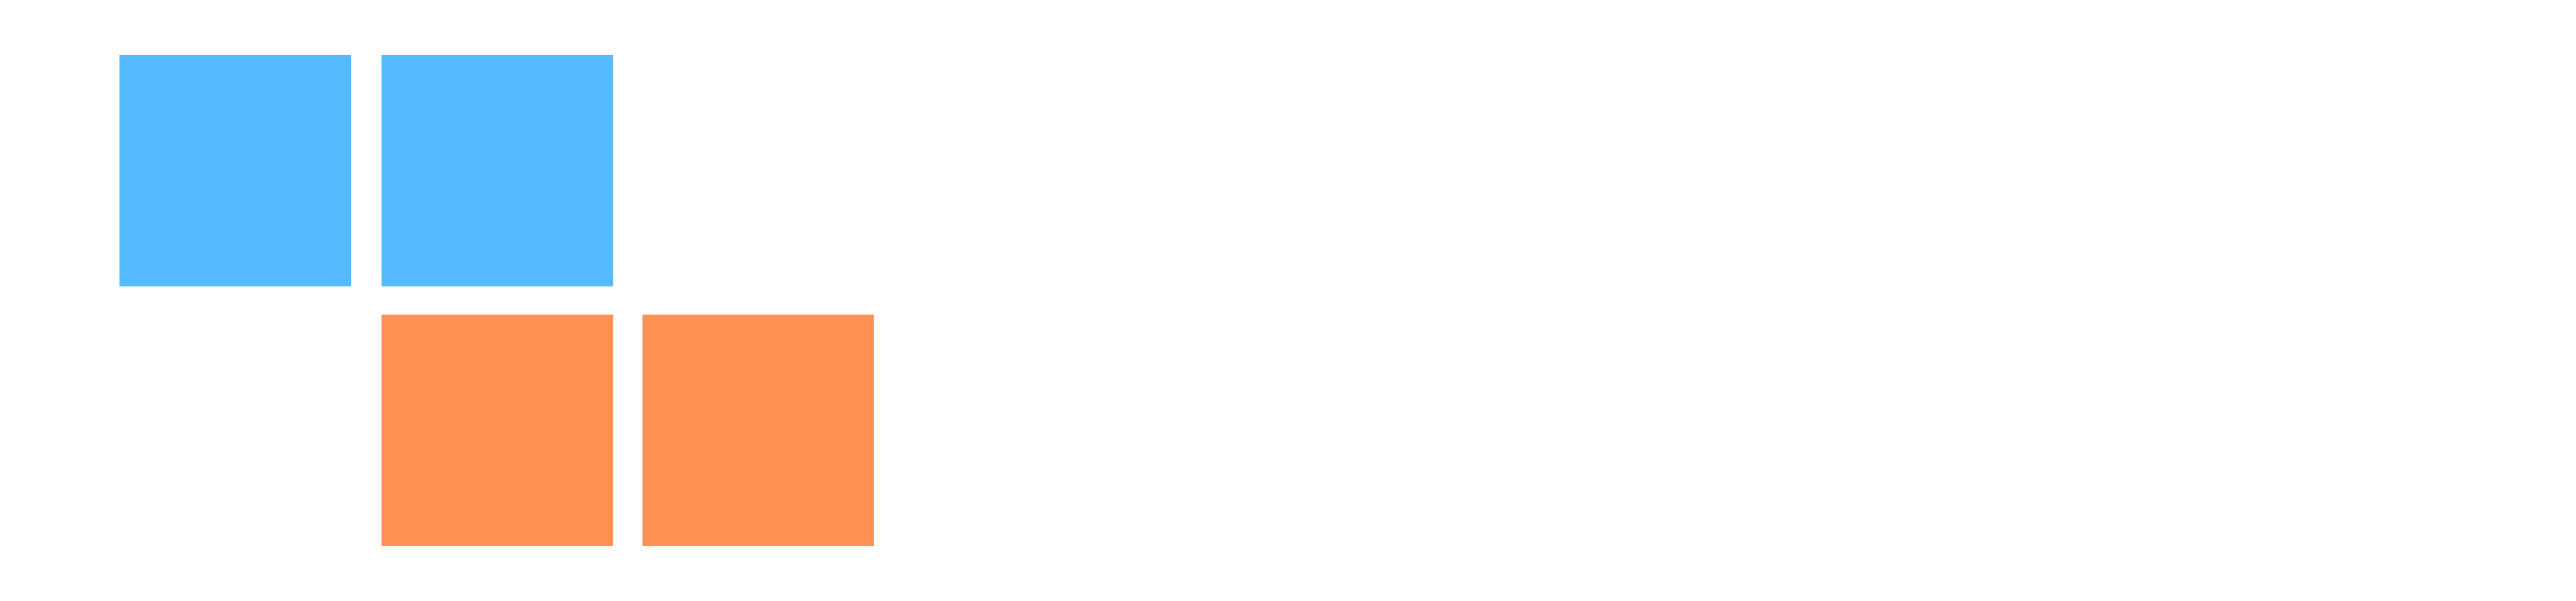 Zedity